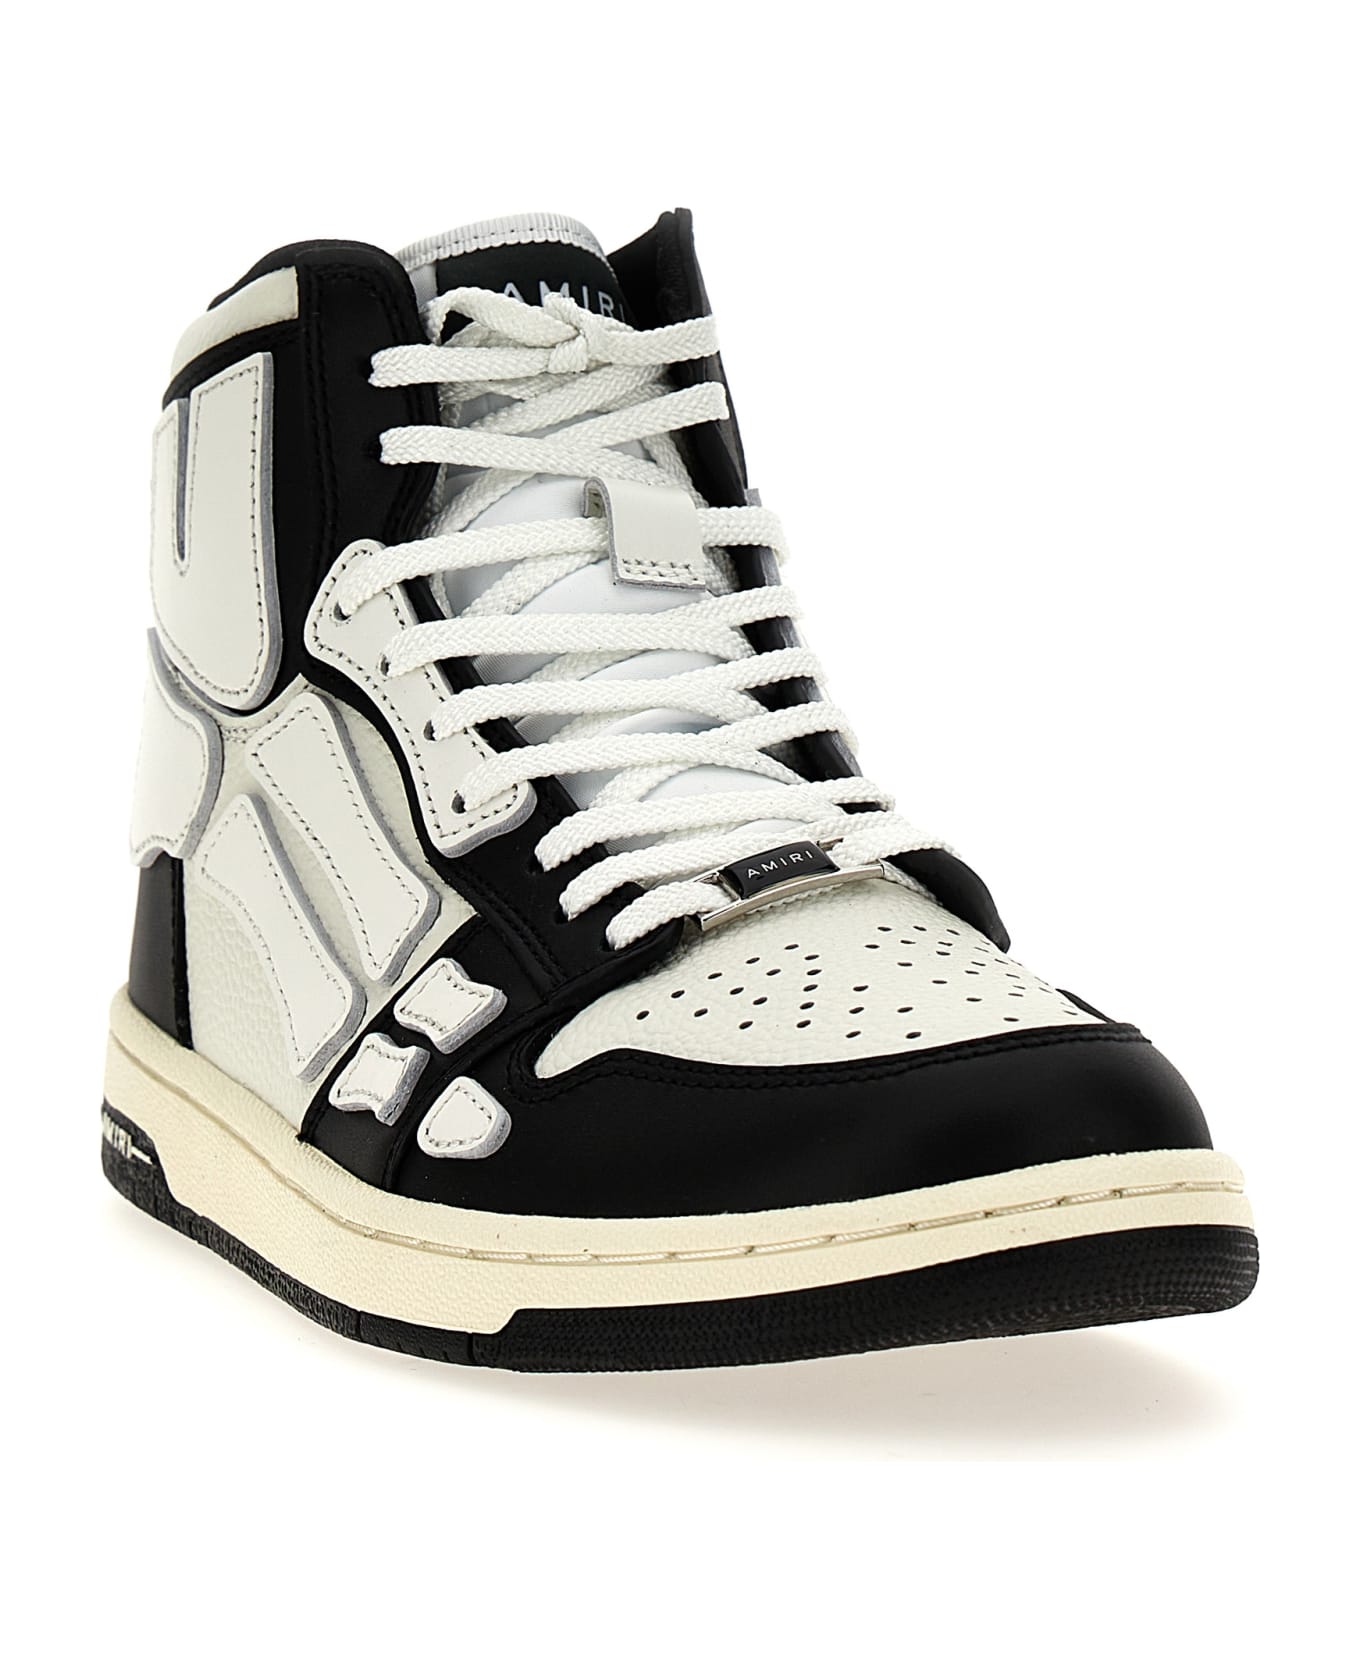 AMIRI 'skel Top Hi' Sneakers - White/Black スニーカー